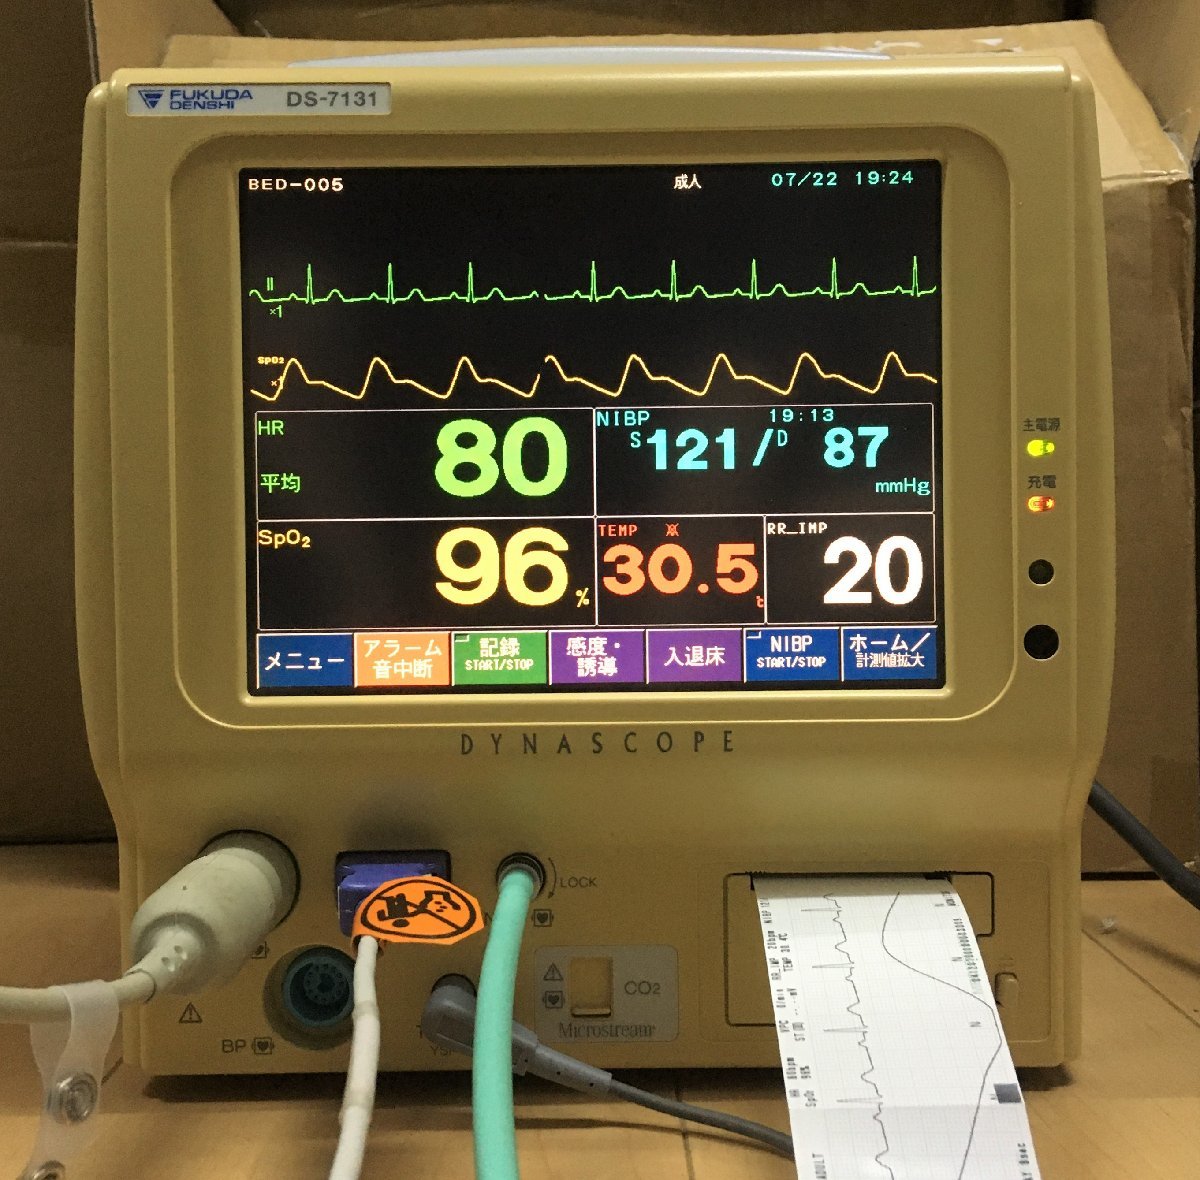 fkda электронный организм информация монитор сердце электро- map .. число кислород степень насыщенности кровяное давление температура тела аккумулятор 60 минут медицинская помощь животное больница fukuda пациент прикроватный монитор кольцо 